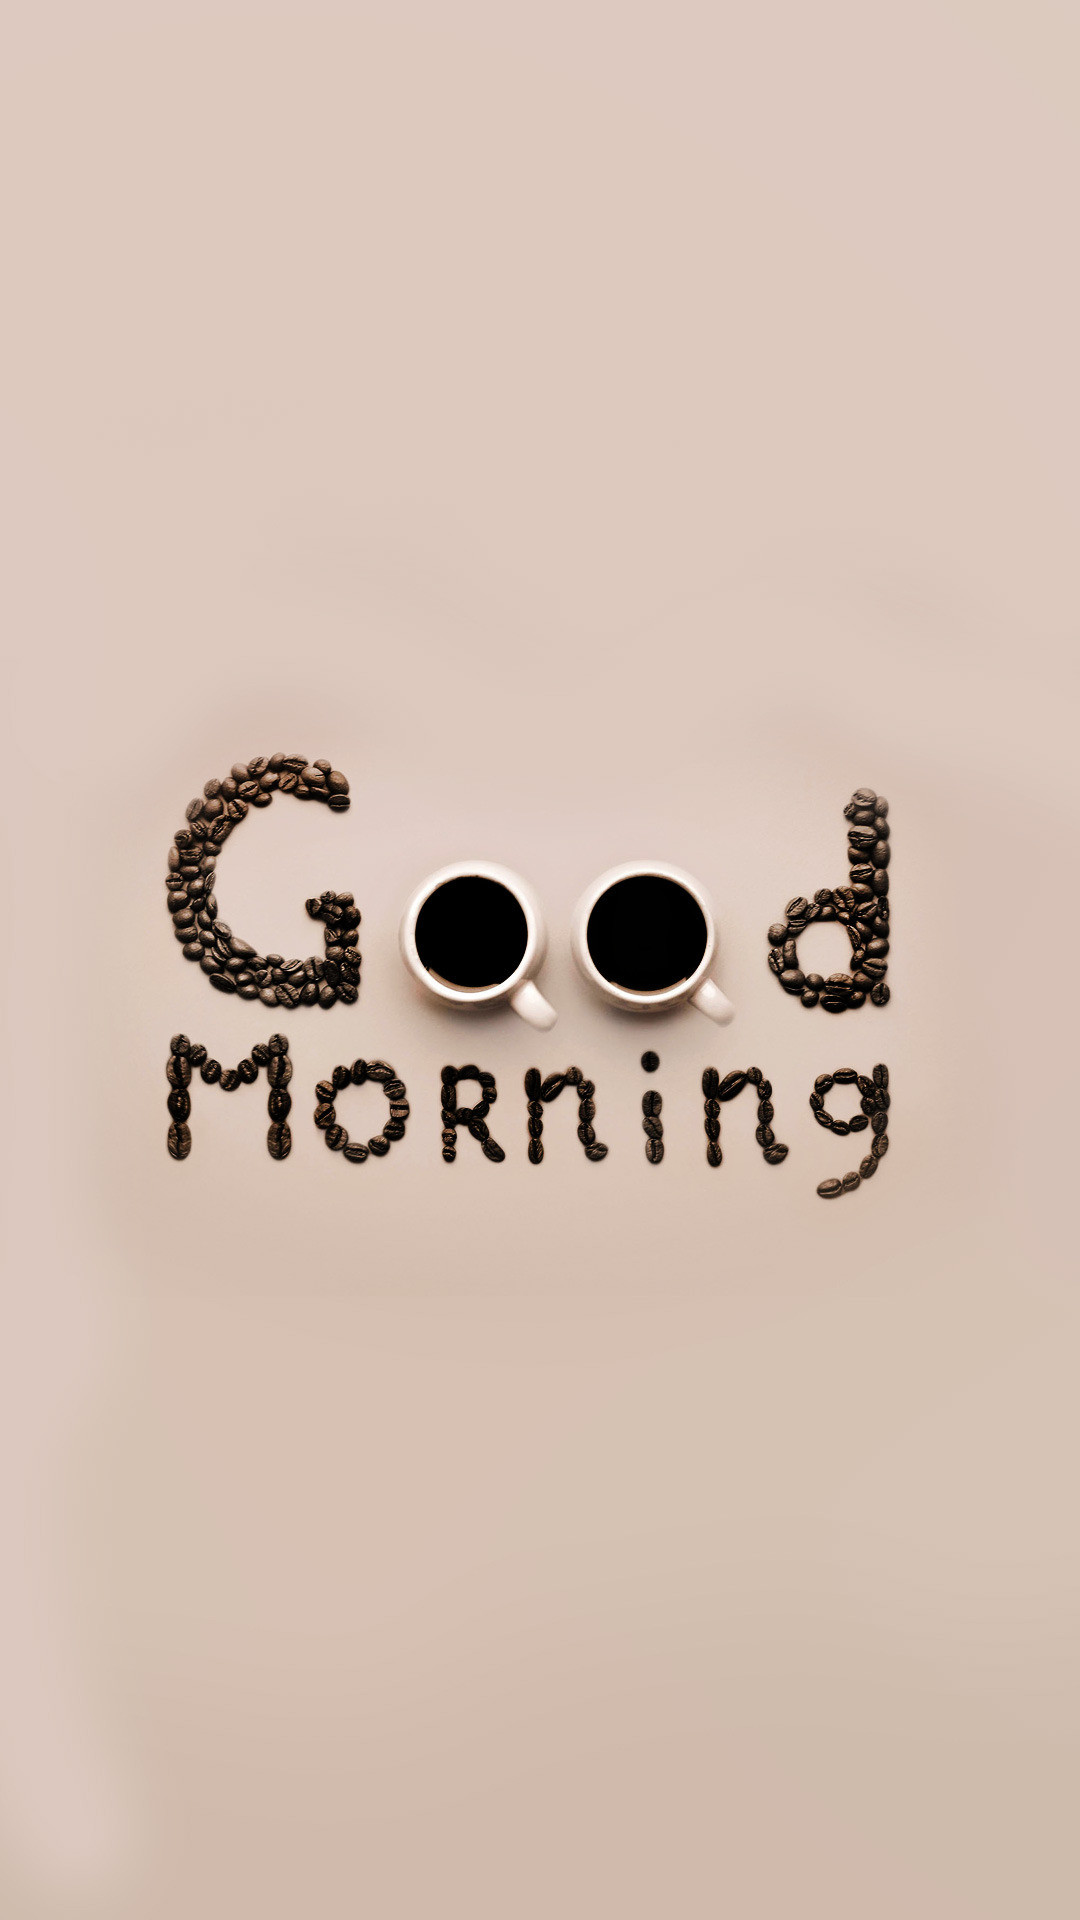 1080x1920 Good Morning Coffee iPhone 6 Plus HD Wallpaper ...